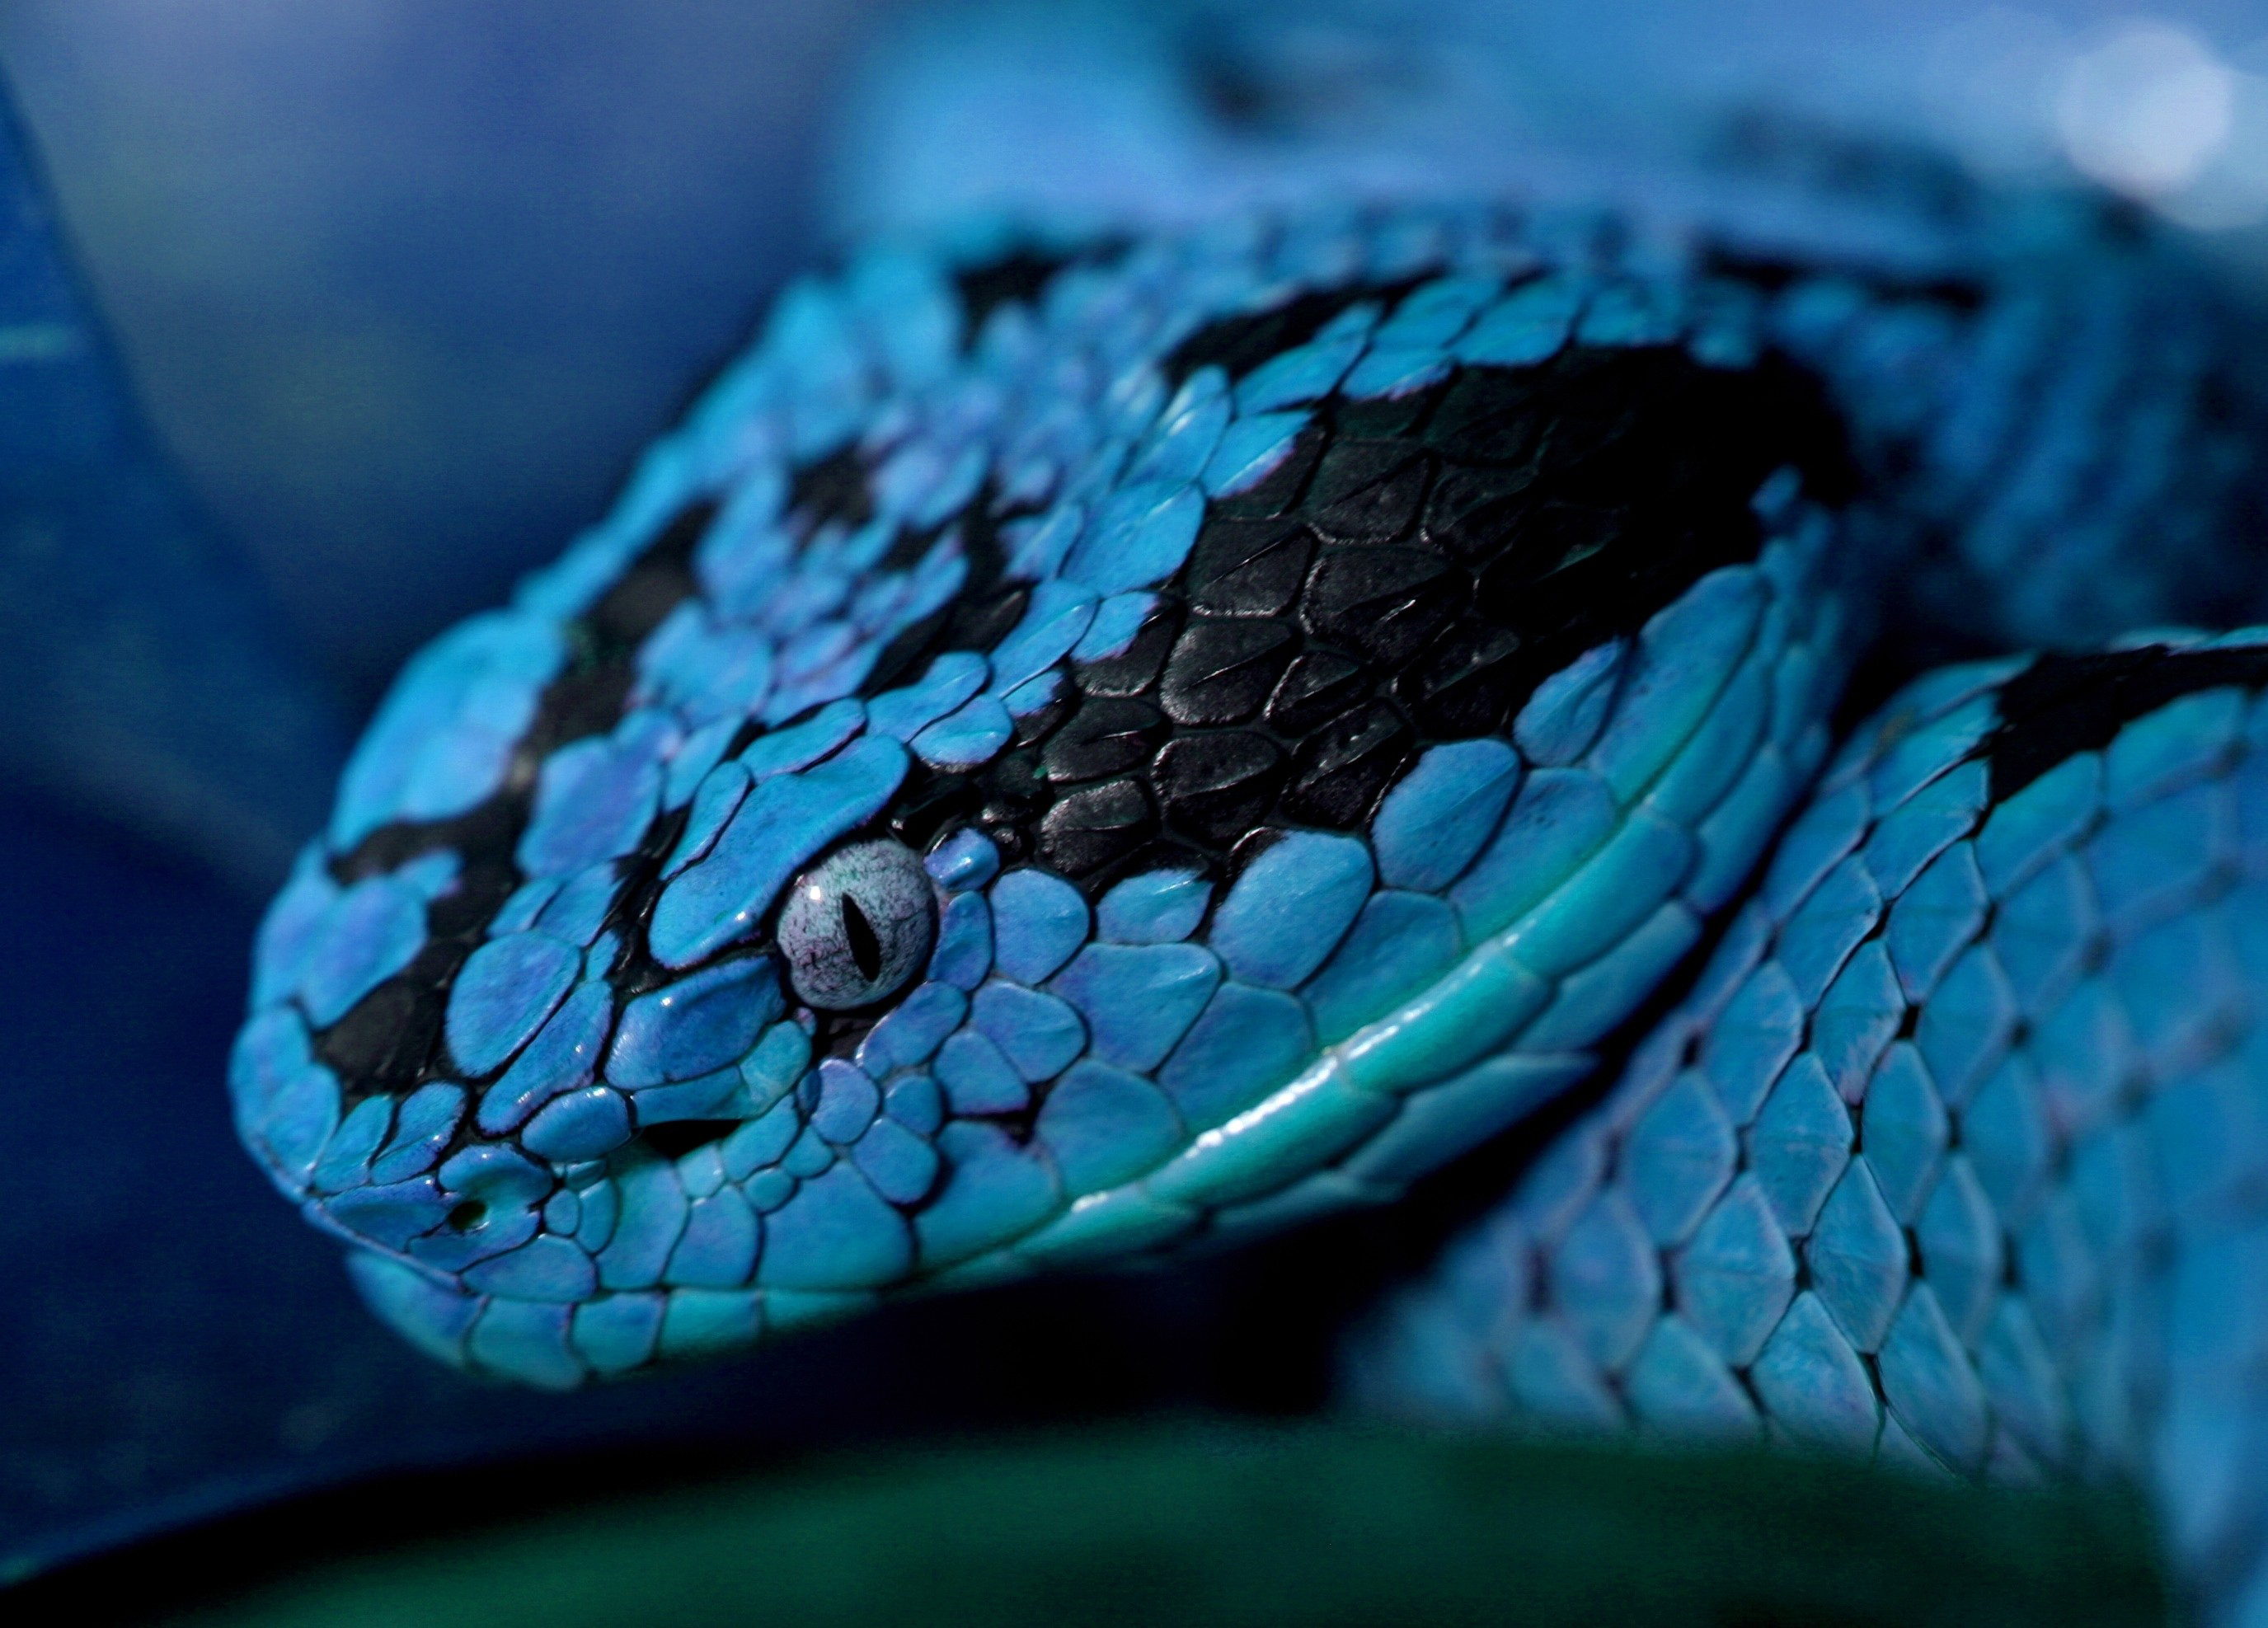 Descarga gratuita de fondo de pantalla para móvil de Animales, Serpiente, Reptiles.